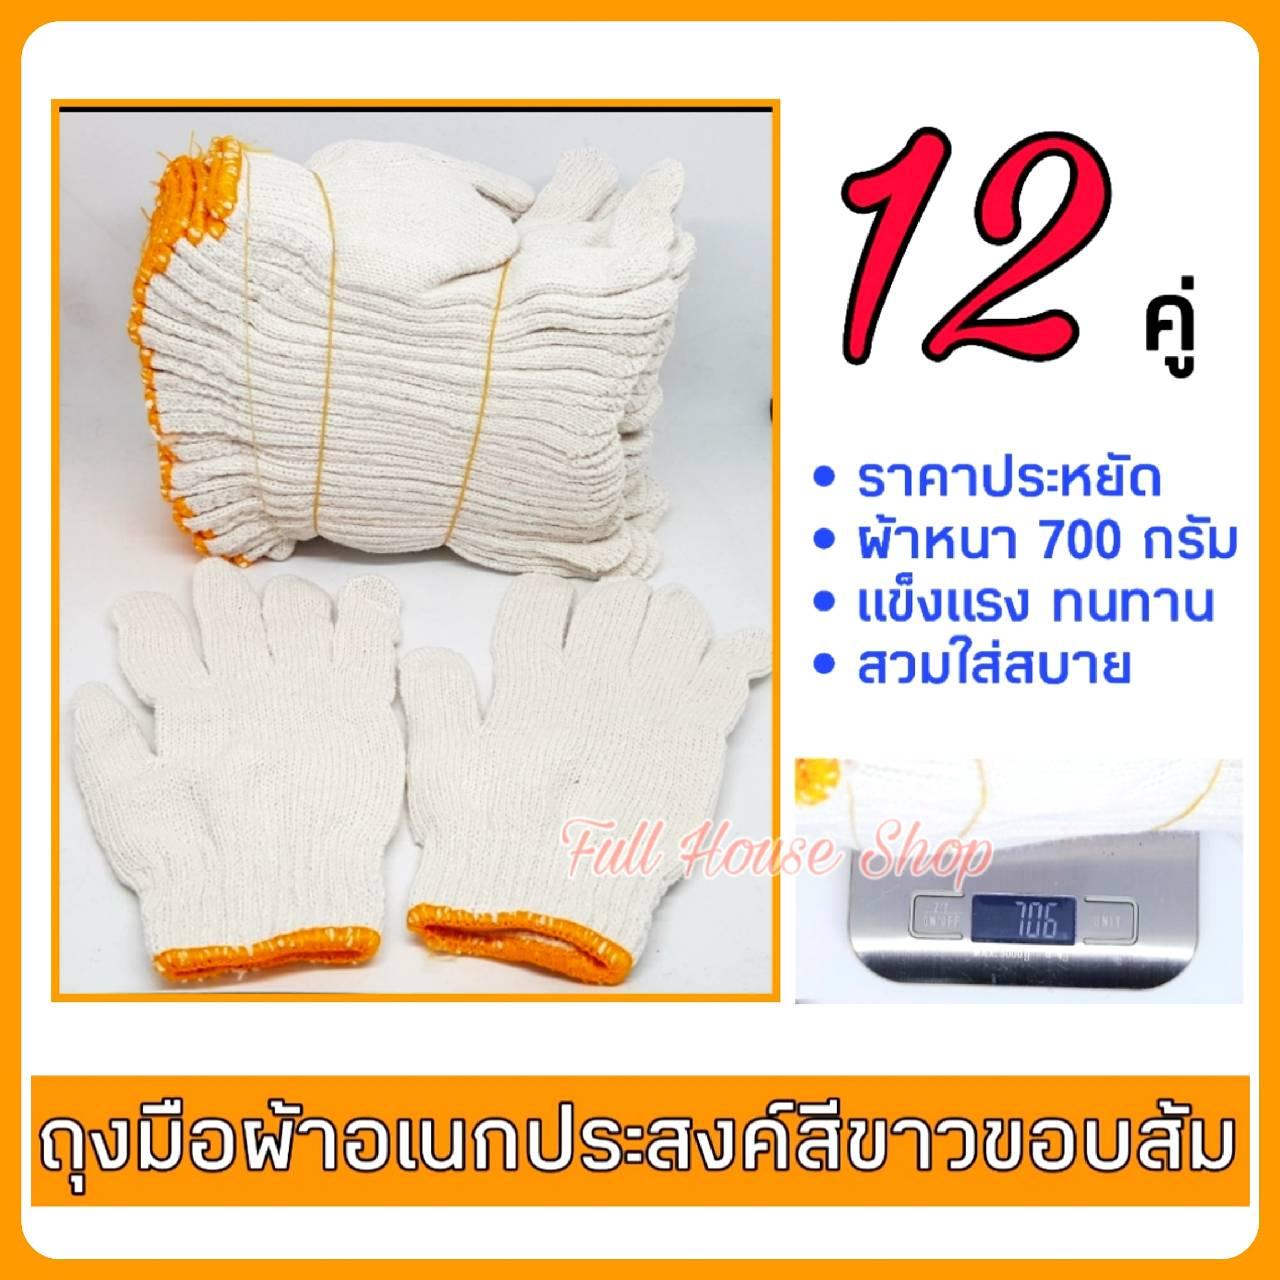 ถุงมือผ้า สีขาวขอบส้ม แพ็ค 1 โหล (12 คู่) ถุงมือผ้าฝ้ายอย่างหนา หนัก 700 กรัม (ต่อโหล) ถุงมือผ้าอเนกประสงค์ ถุงมือโรงงาน ถุงมืออุตสาหกรรม ถุงมือทำสวน งานเกษตร และใช้งานทั่วไป